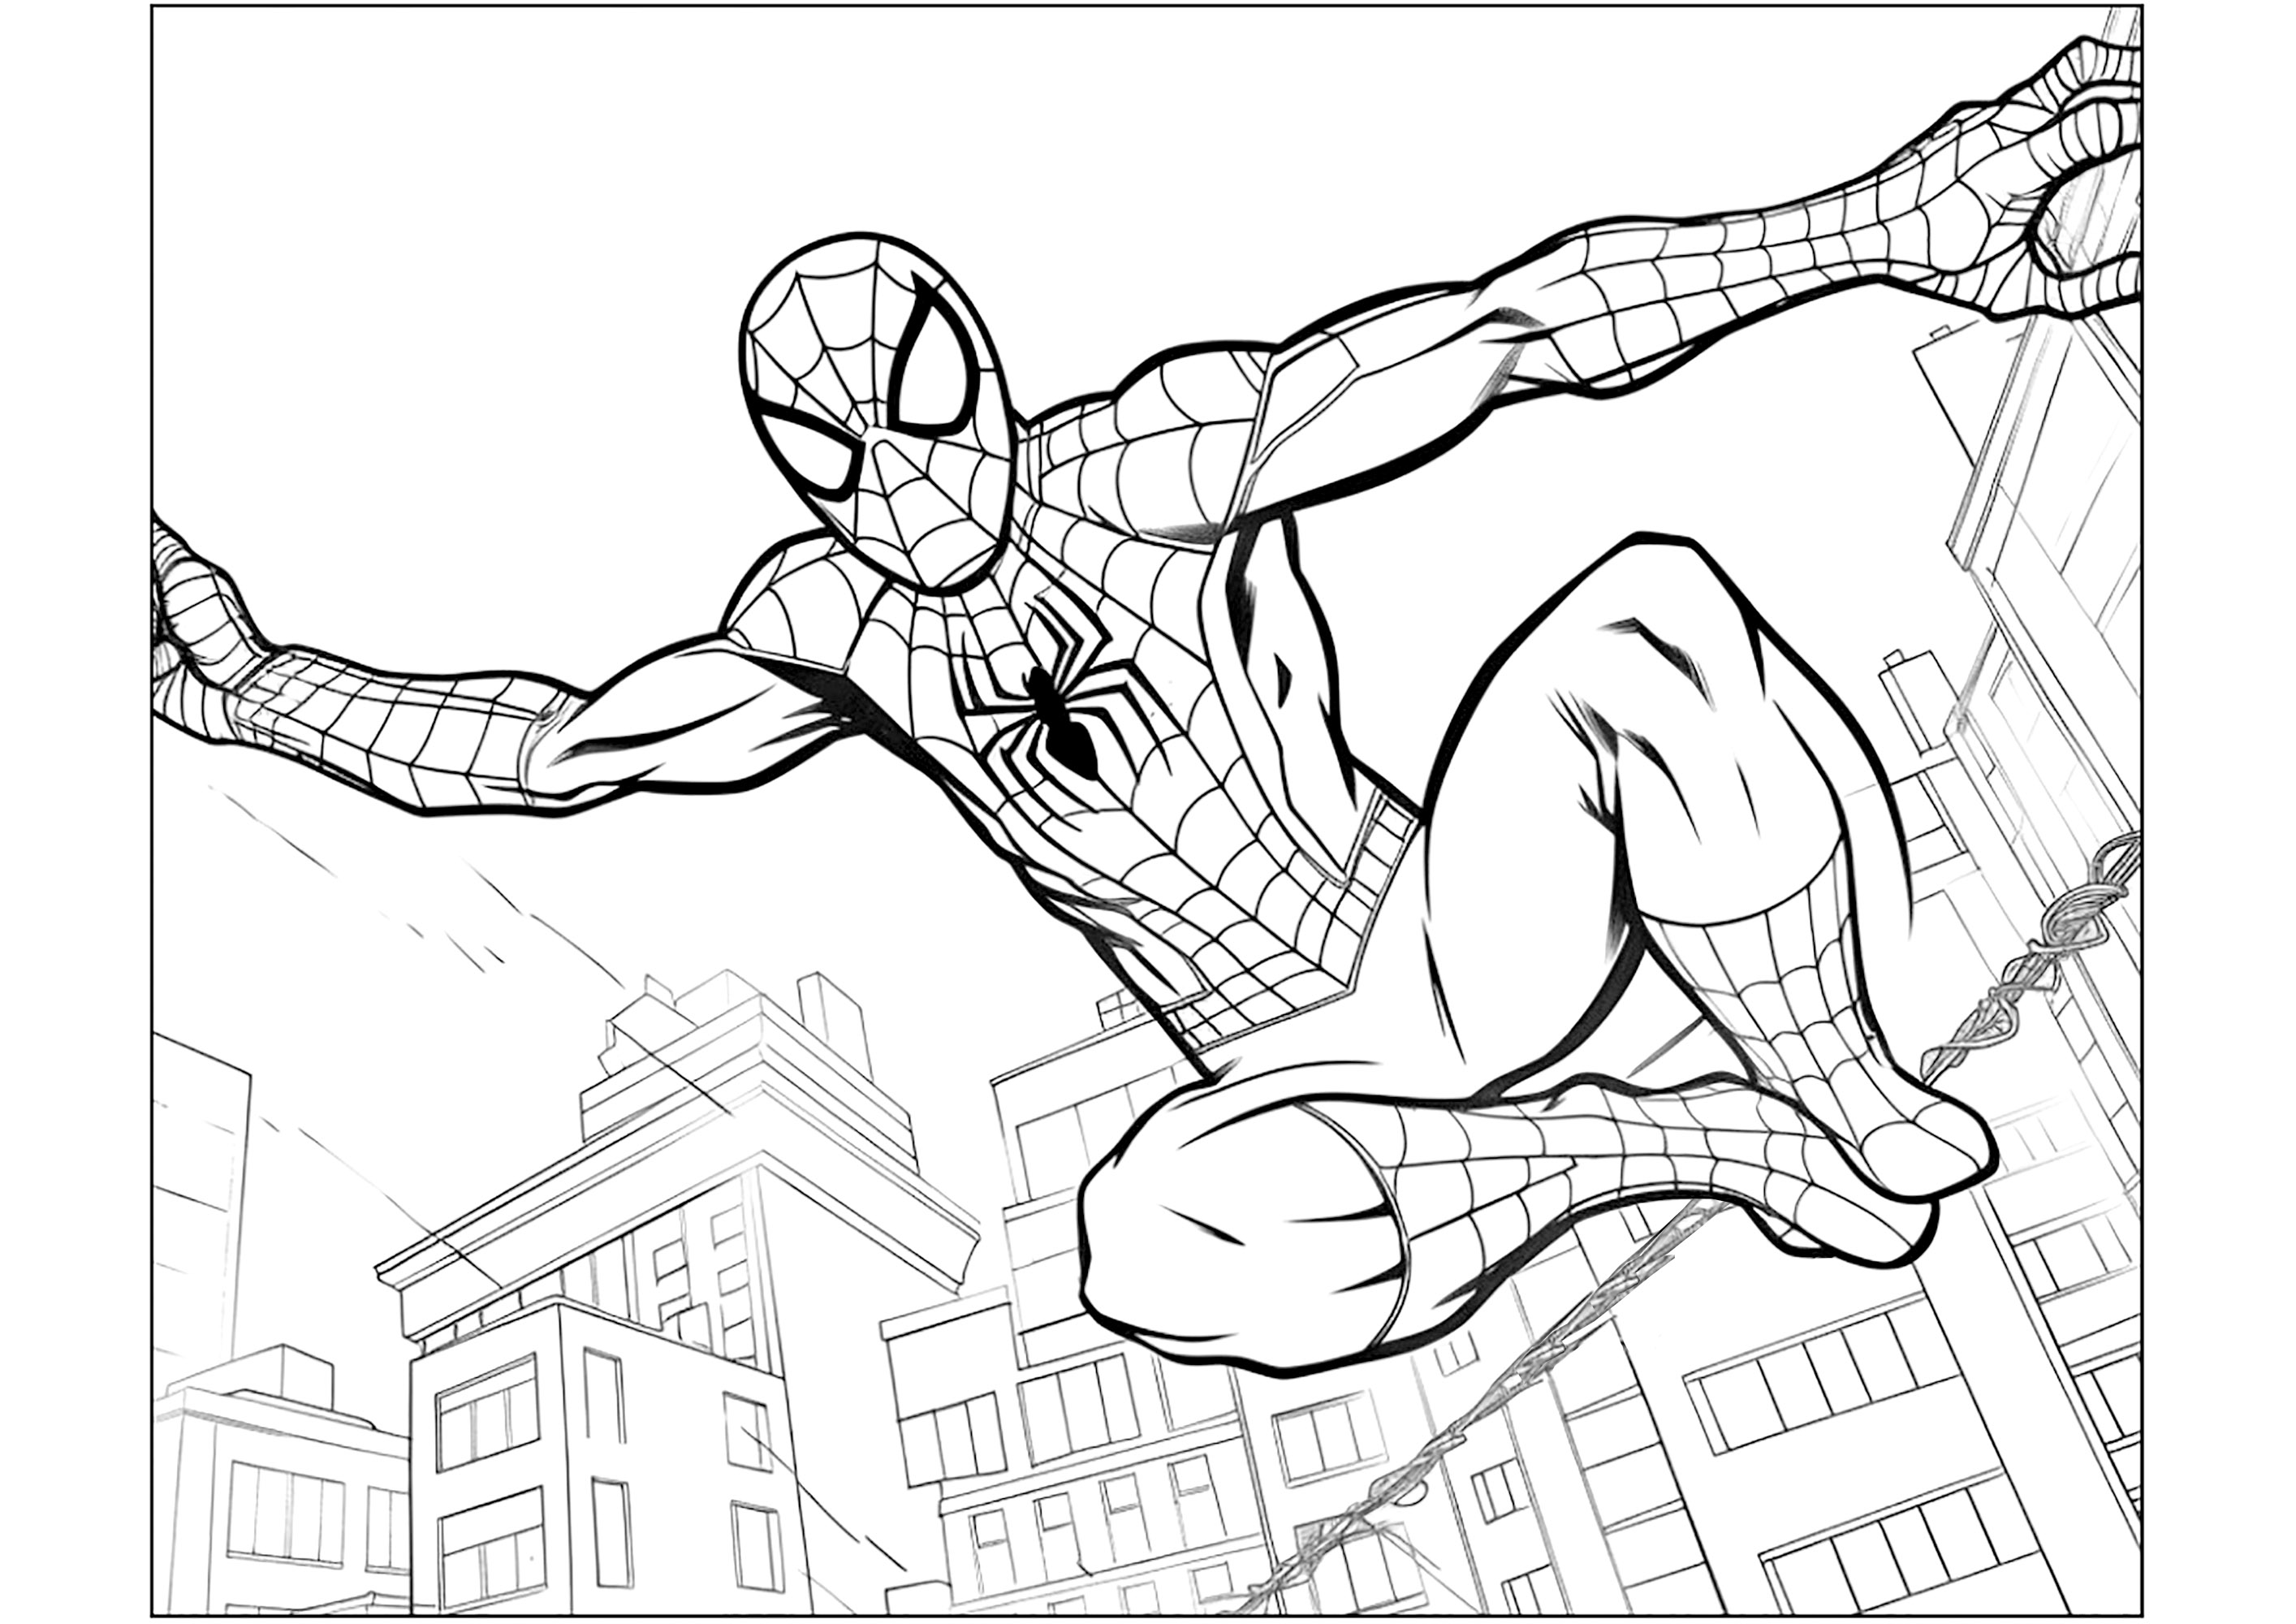 Homem-Aranha em ação sobre os telhados de Nova Iorque